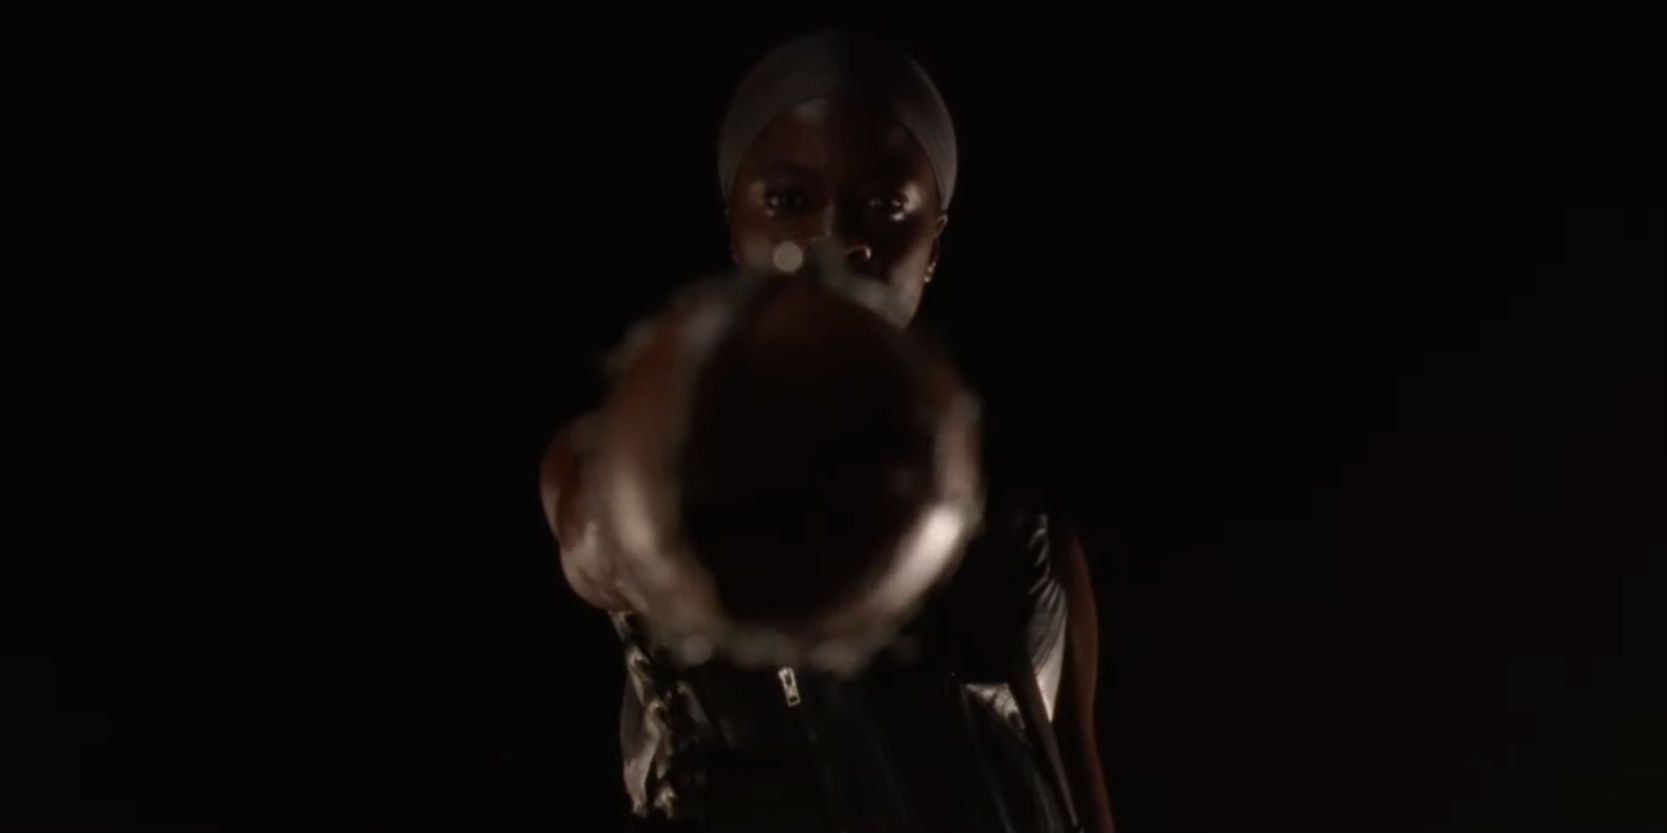 Michonne holding Lucille in The Walking Dead season 10 trailer